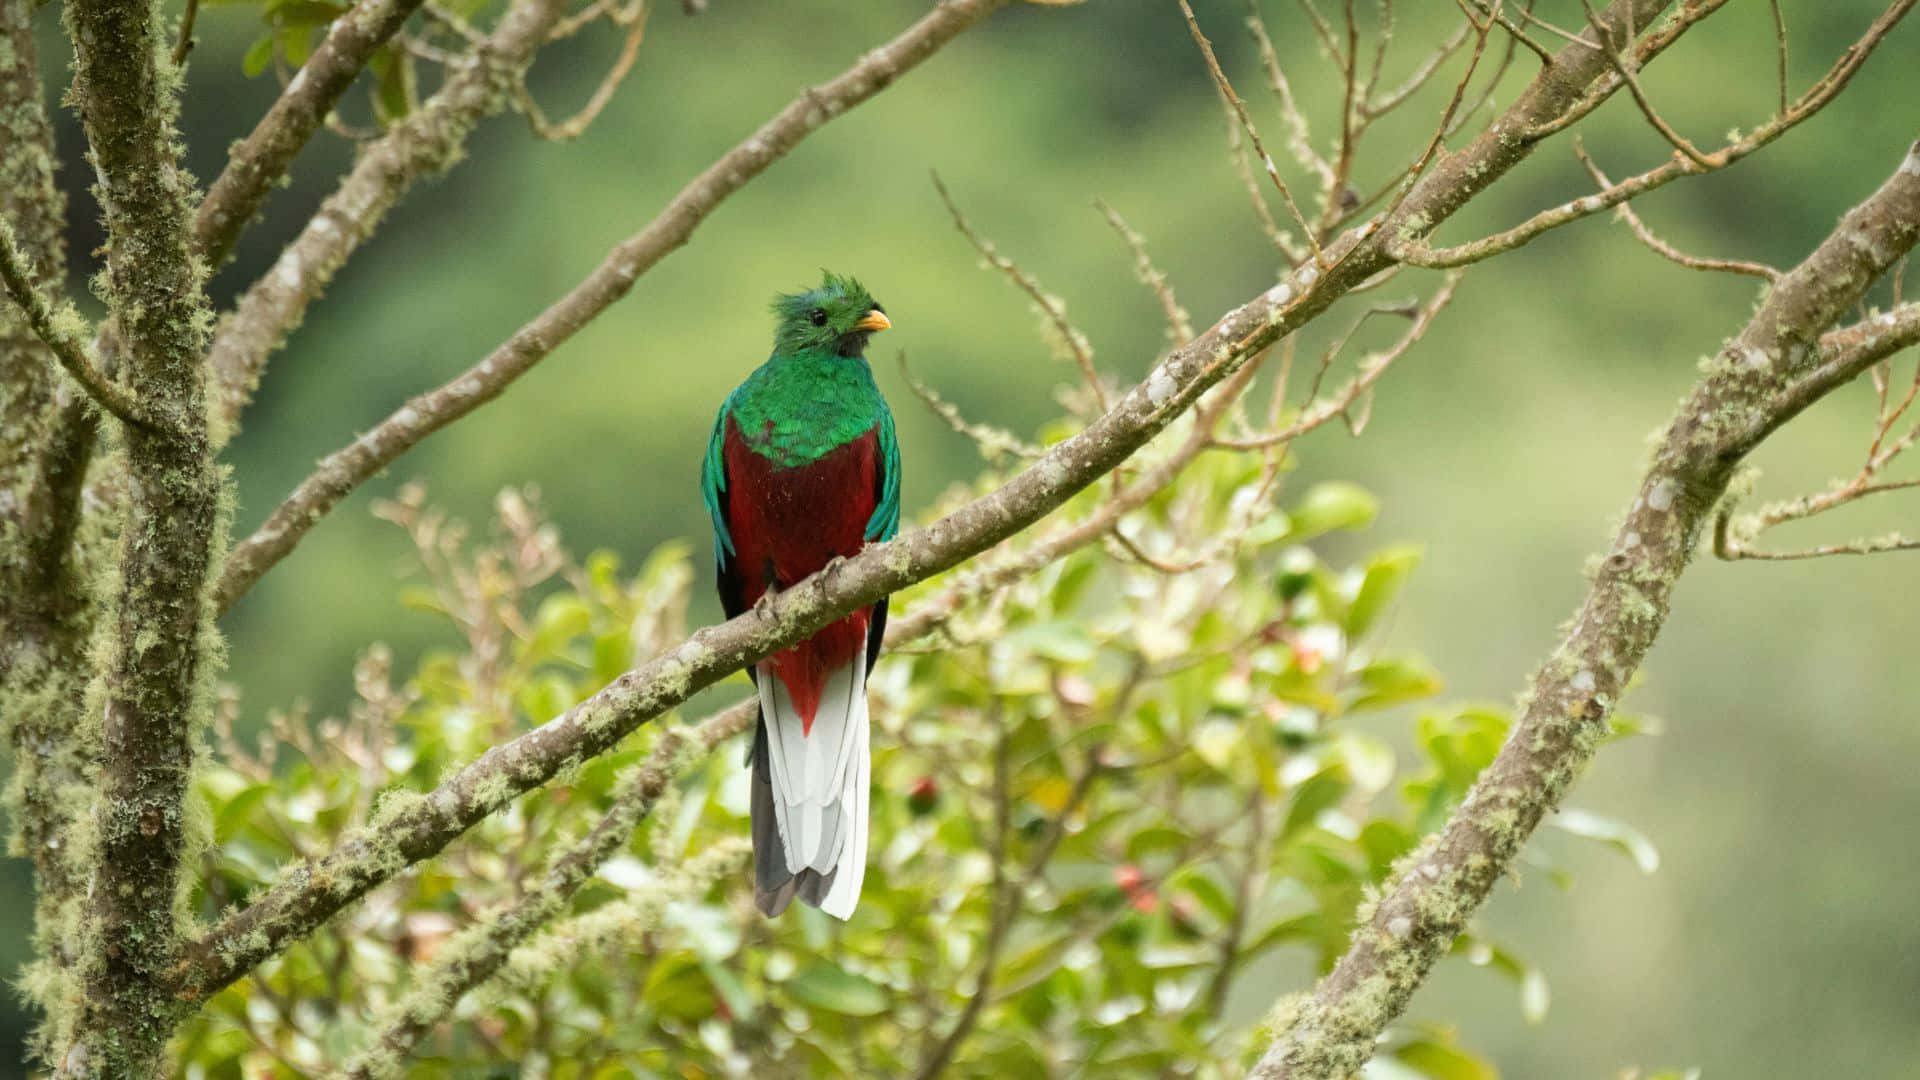 Vibrant Quetzal Perchedin Nature.jpg Wallpaper